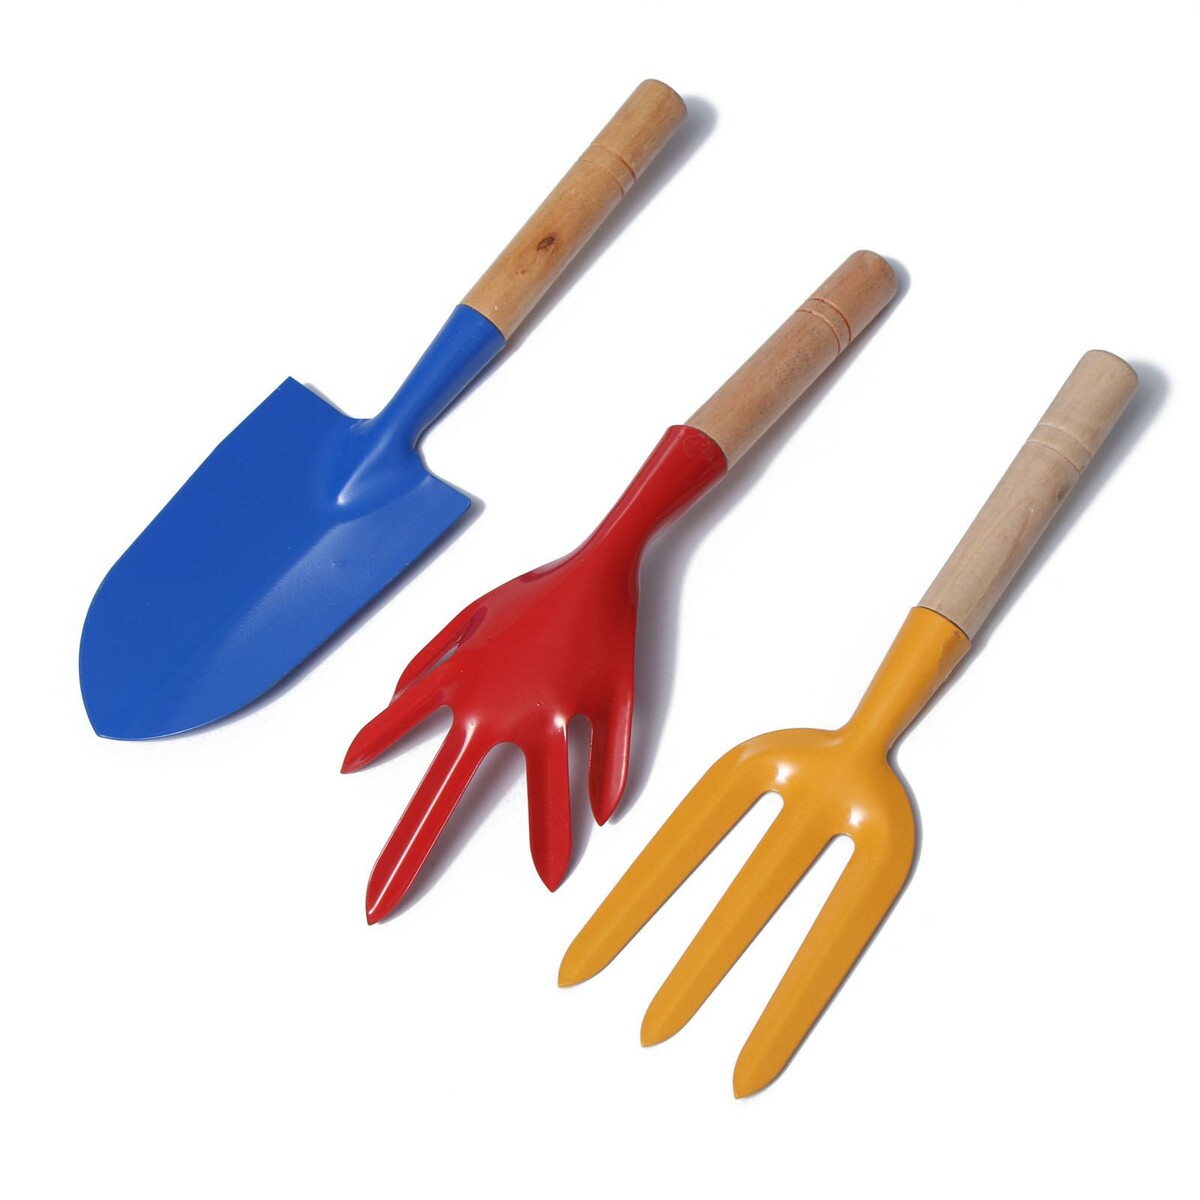 Набор садового инструмента, 3 предмета: совок, рыхлитель, вилка, длина 28 см, деревянные ручки набор для игры в песке 108 3 формочки грабли совок 2 набор